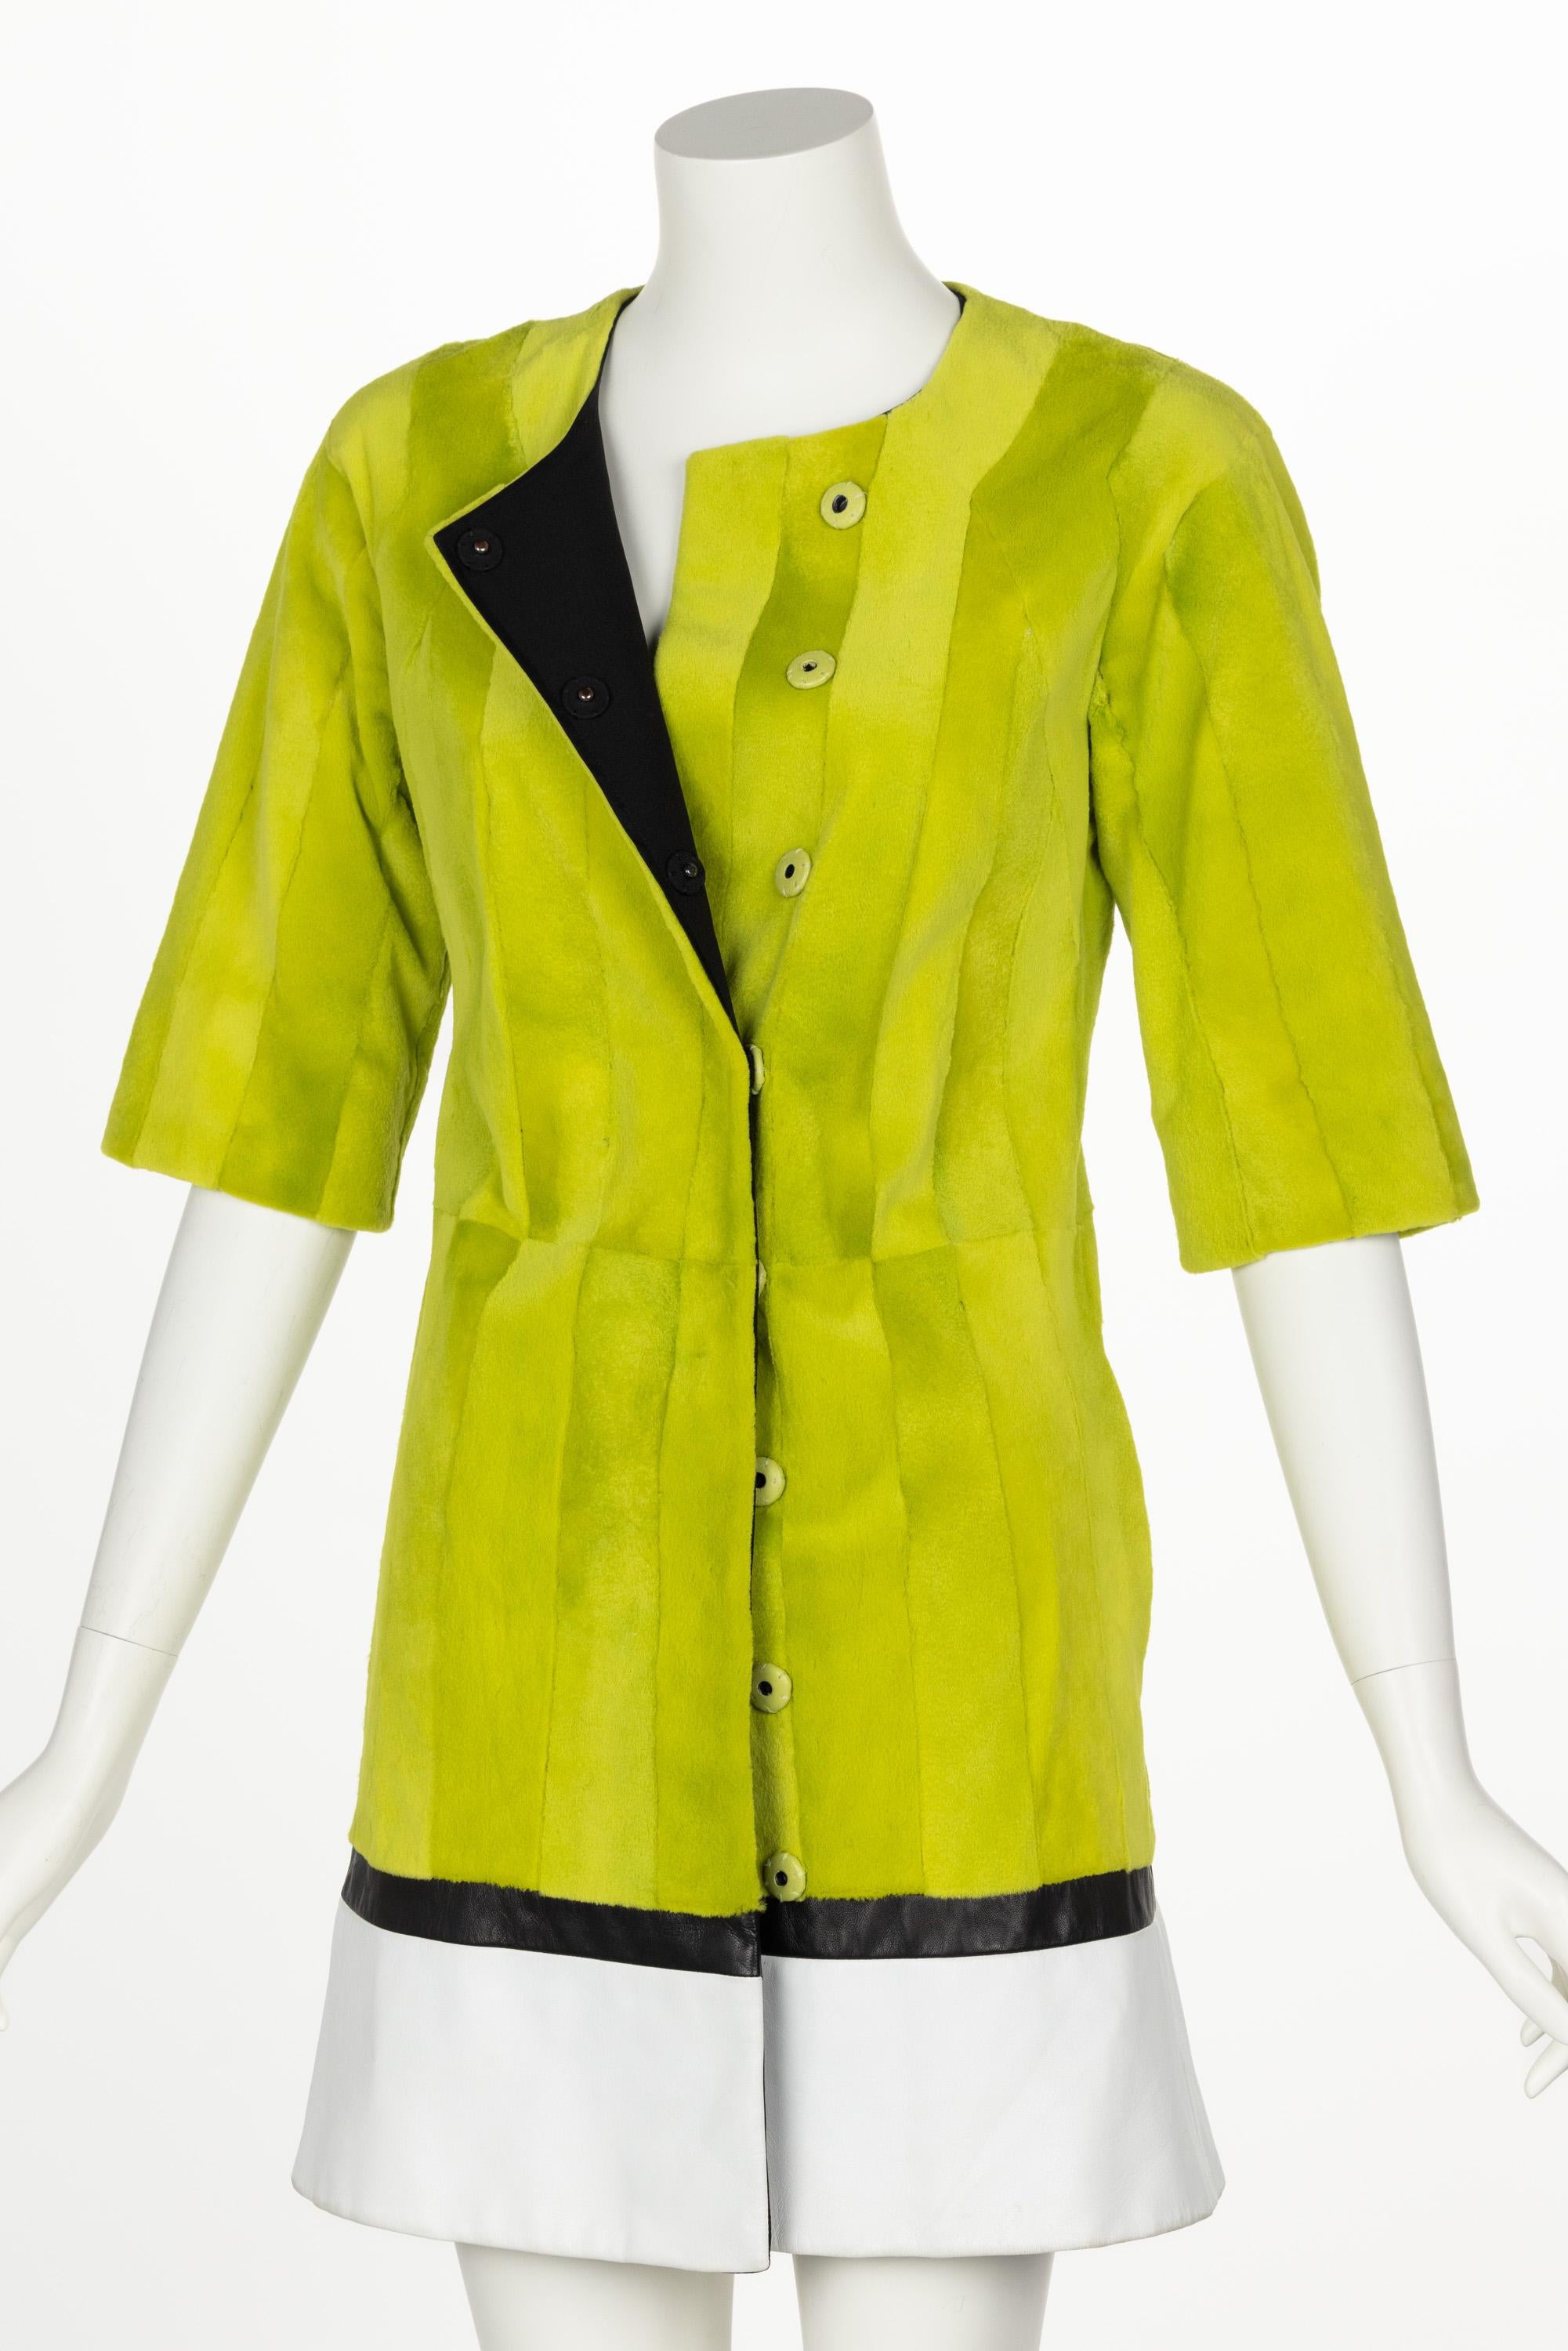 J. Mendel Chartreuse Green Fur & Leather Coat For Sale 5